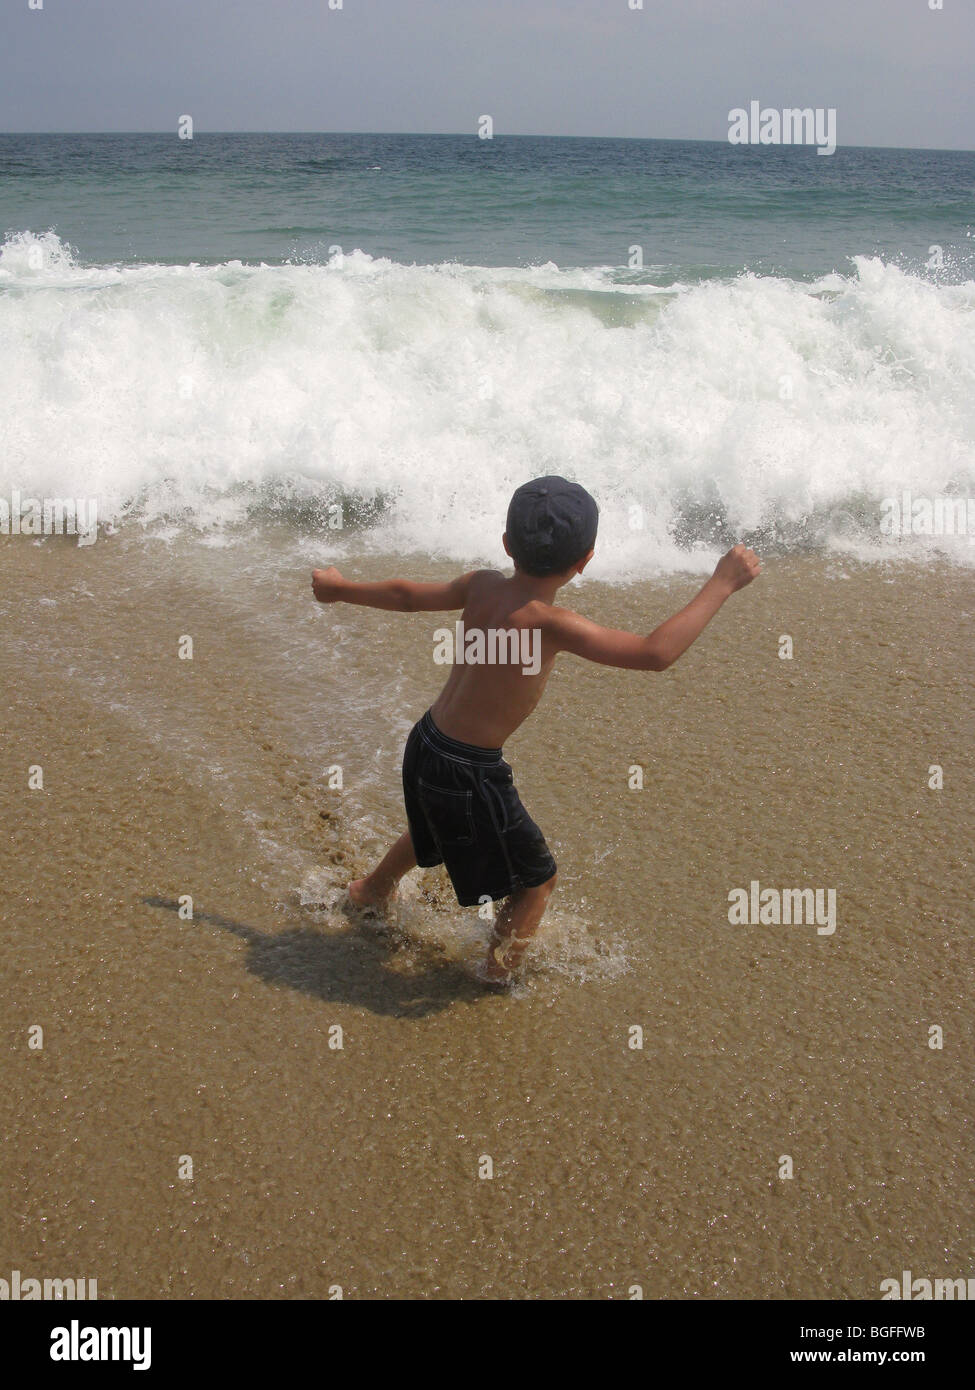 Un joven al borde de la playa las ondas de agua Foto de stock